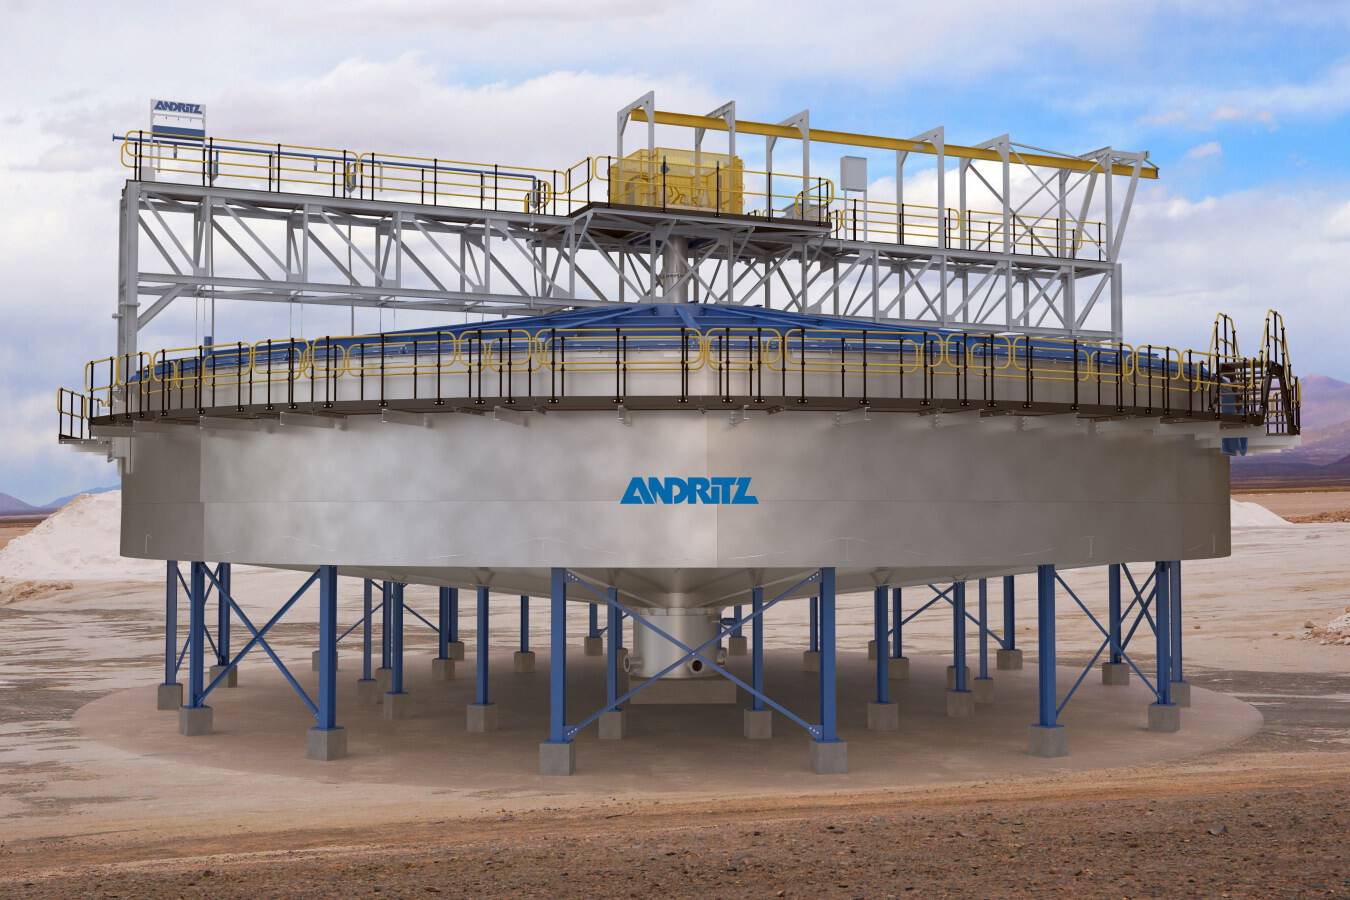 ANDRITZ präsentiert LiKOSET – eine maßgeschneiderte Eindicker-Lösung Höchst effiziente und nachhaltige Verarbeitung für die Lithium-, Agrar-, Salz- und chemische Industrie. zum Ausbau der E-Mobilität und weitere Einsatzmöglichkeiten.